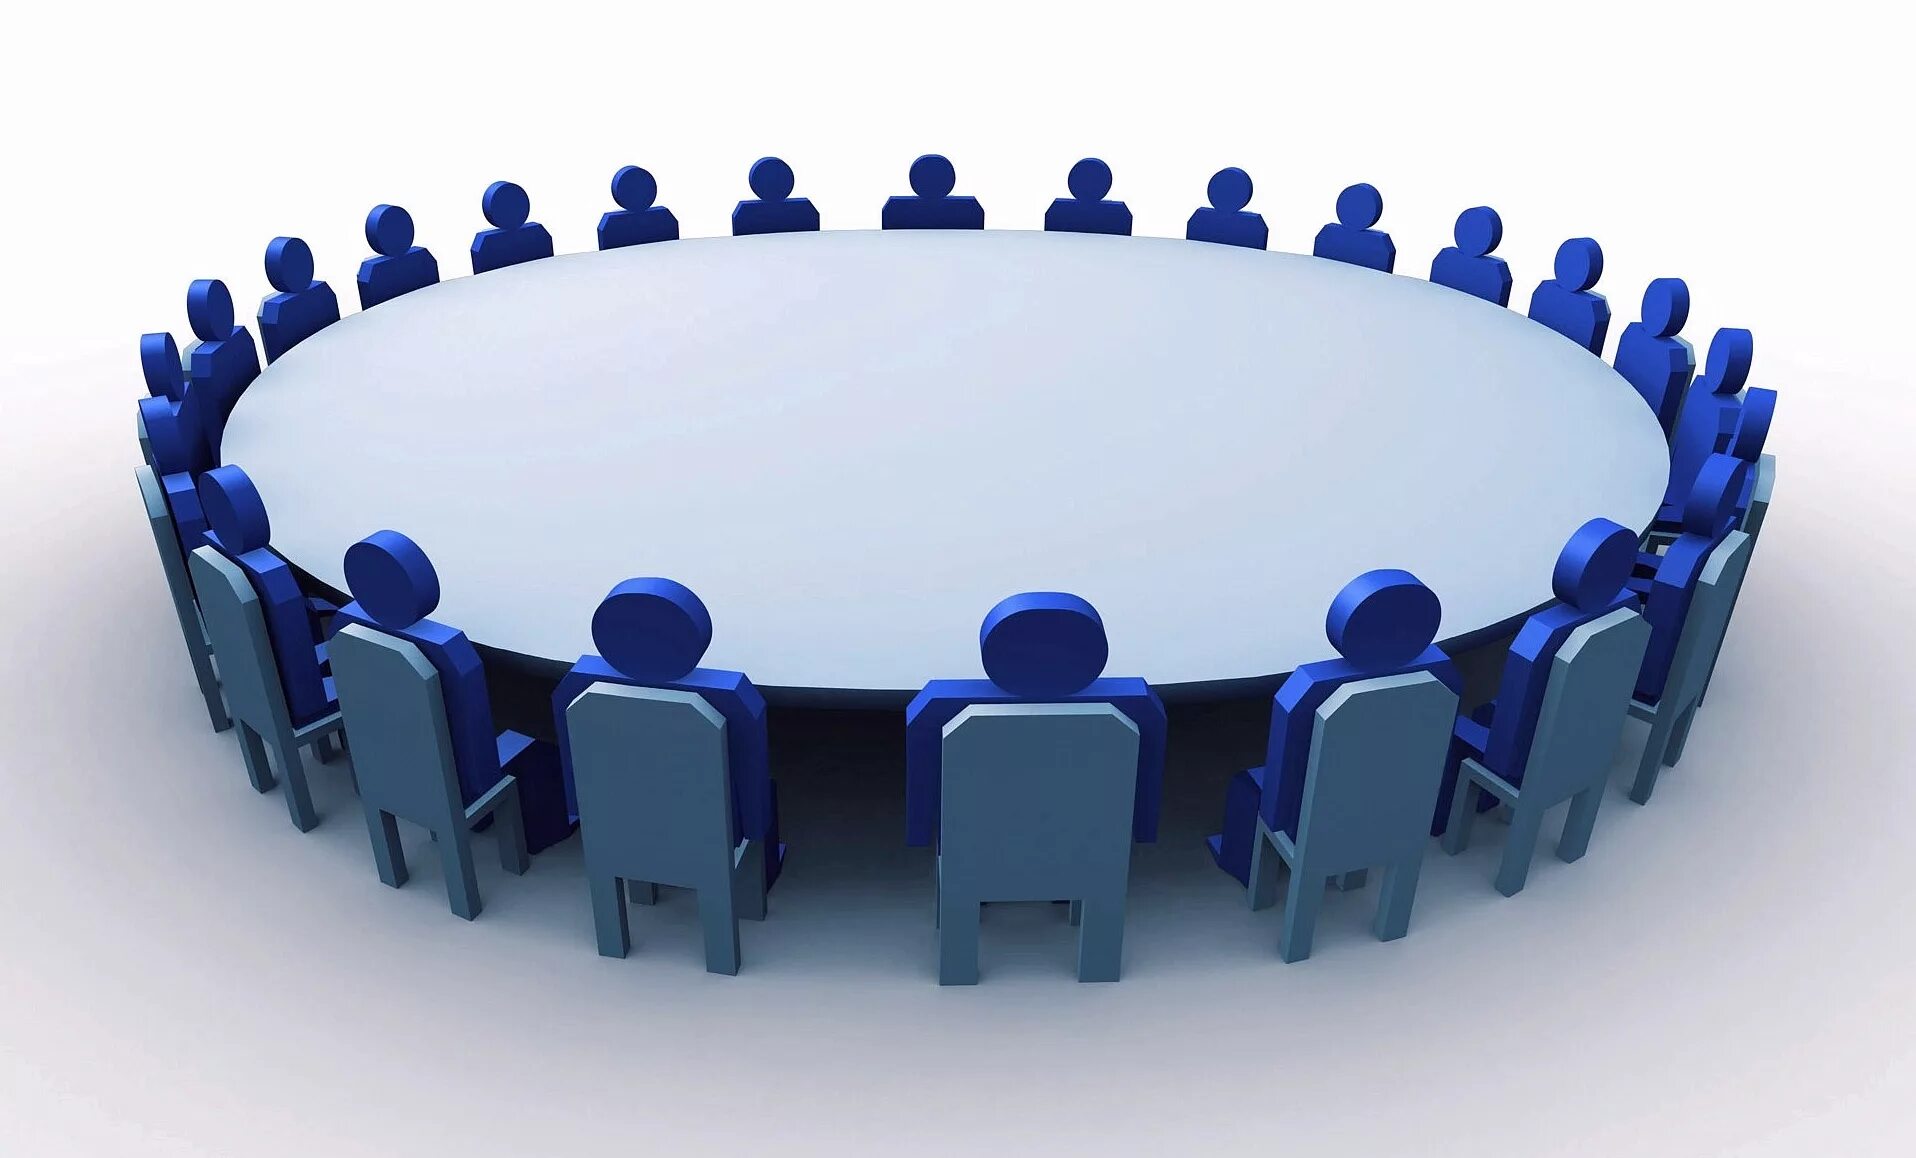 Программа общественных обсуждений. Организация круглого стола. Круглый стол заседание. Круглый стол. Круглый стол собрание.